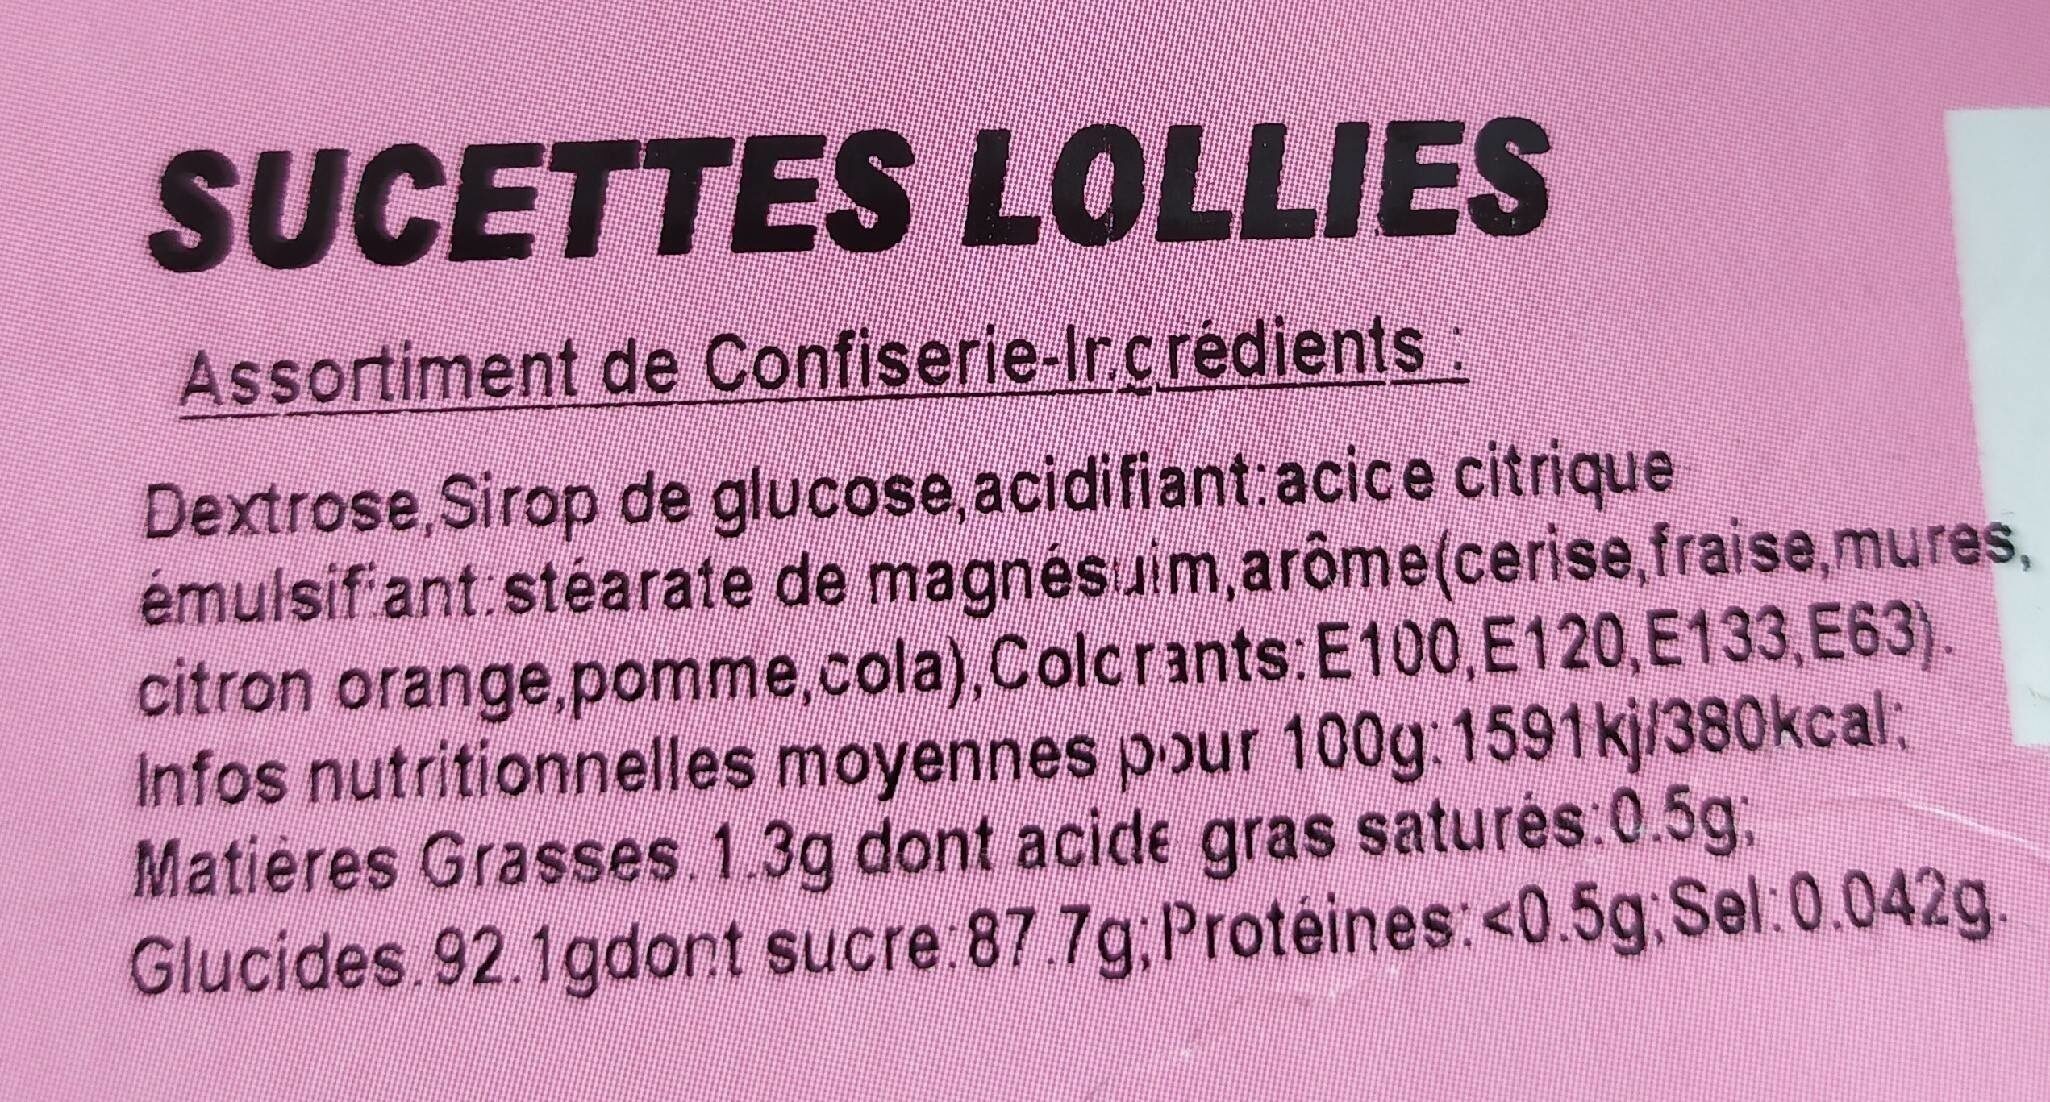 Sucettes Lollies - Tableau nutritionnel